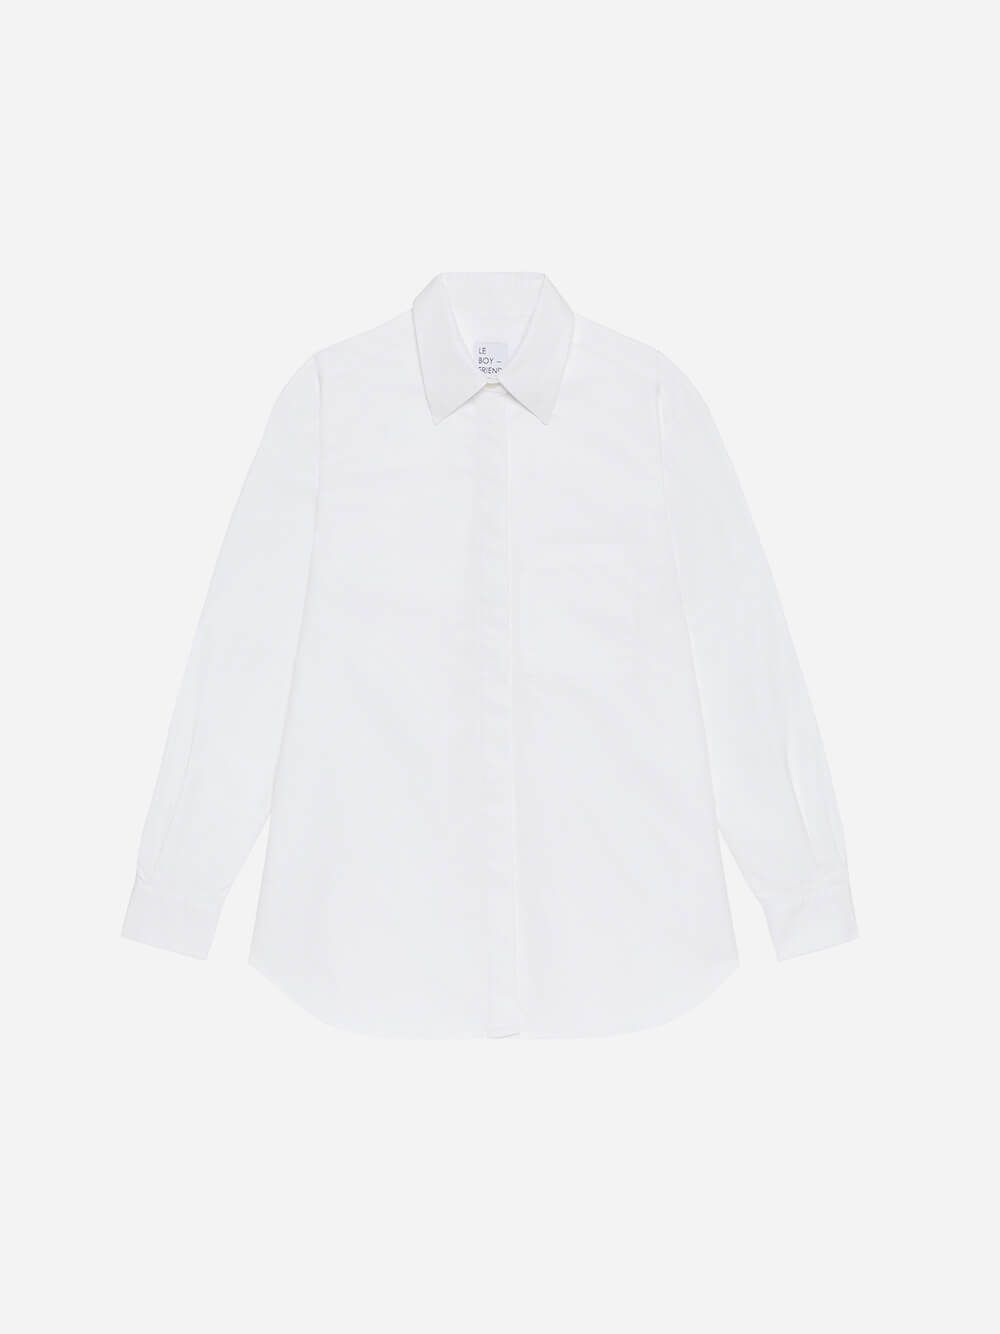 Serge White Shirt | Le Boyfriend